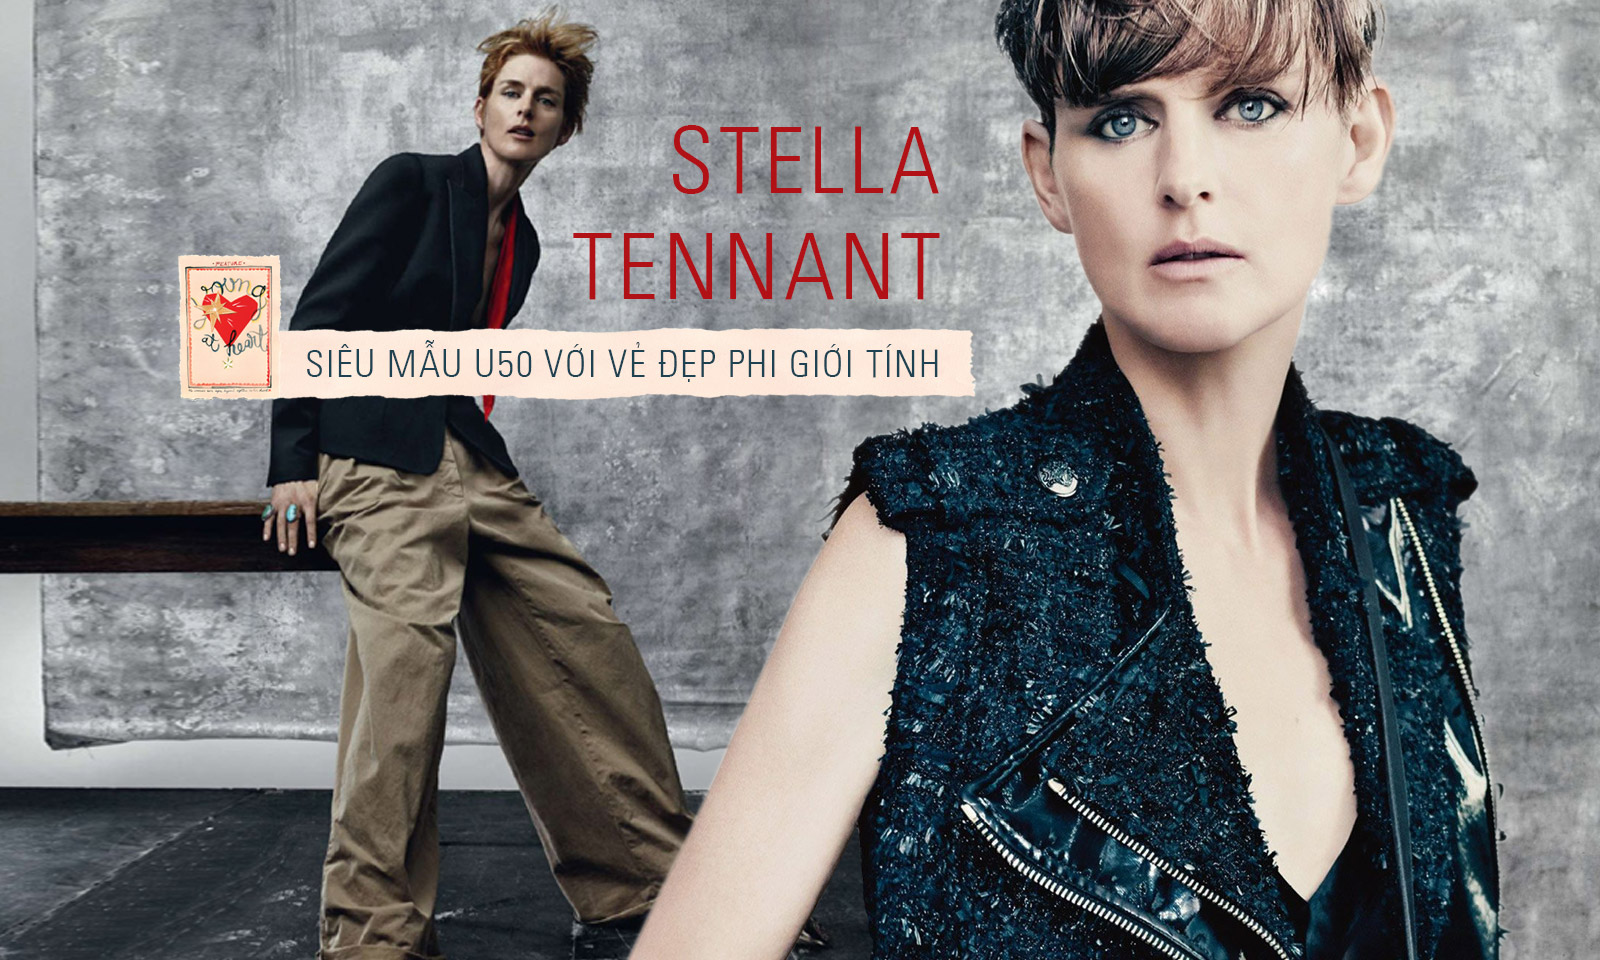 Stella Tennant: Vẻ đẹp phi giới tính cận kề tuổi 50 khiến hậu bối cũng phải ngả mũ